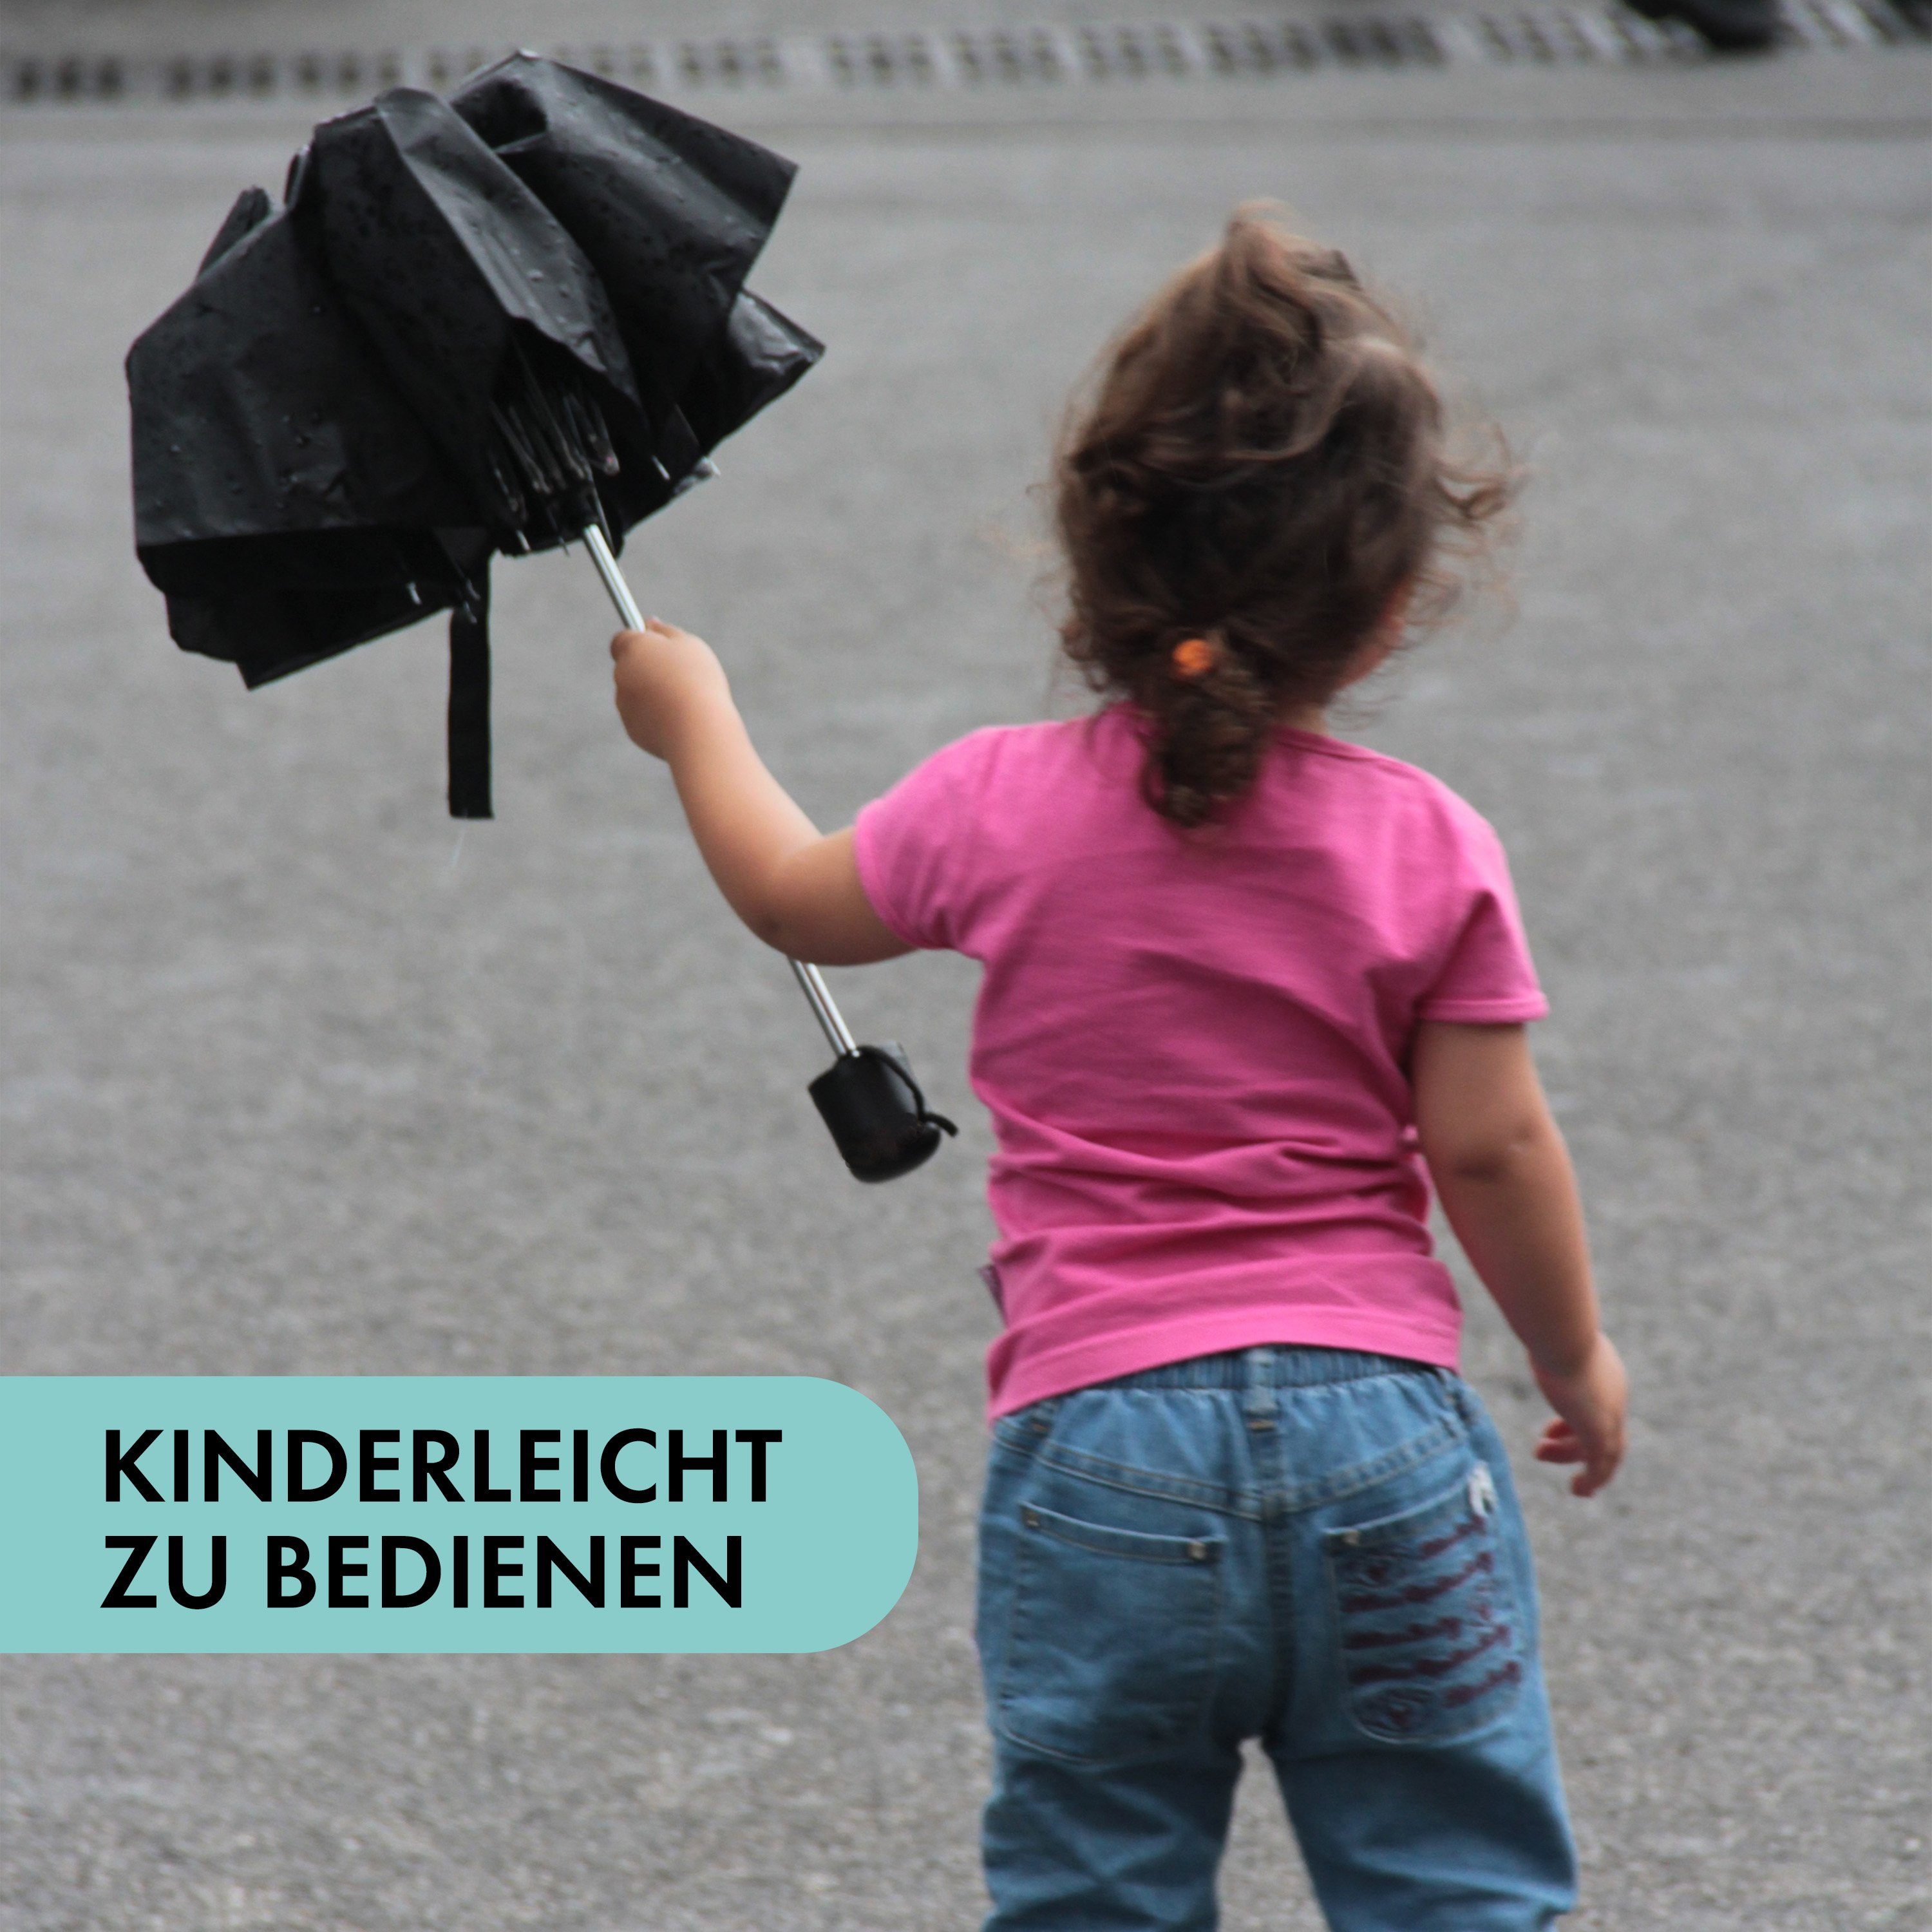 Griff und Kleiner mini mit Olsen Automatik Rutschfestem Herren, Taschenregenschirm für Taschenschirm Hellblau Damen